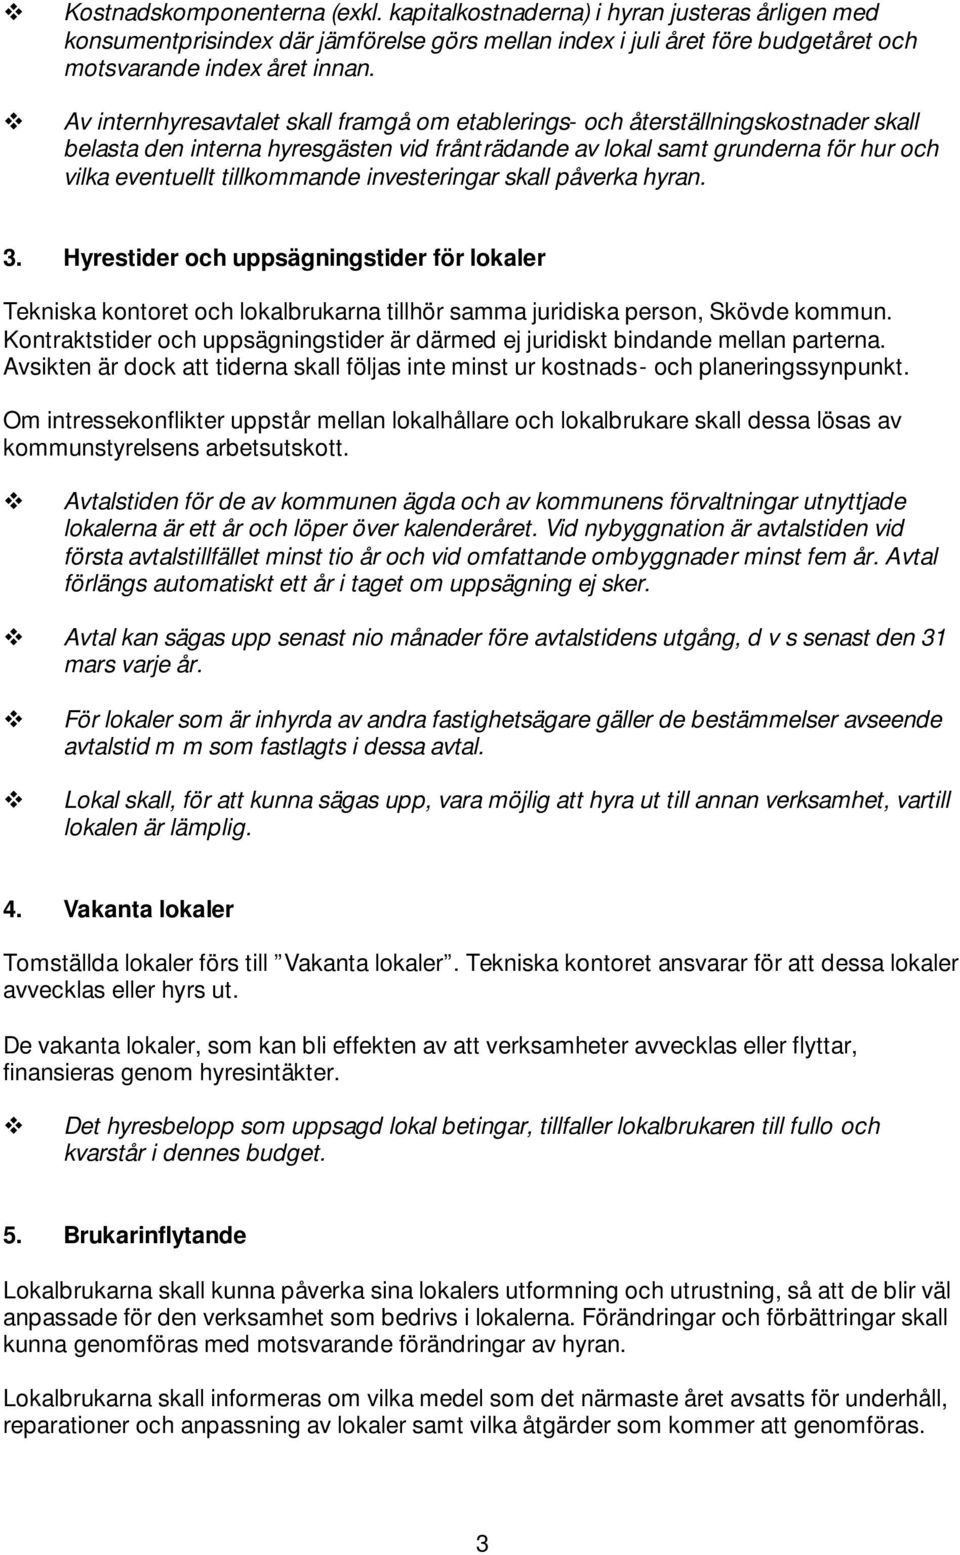 investeringar skall påverka hyran. 3. Hyrestider och uppsägningstider för lokaler Tekniska kontoret och lokalbrukarna tillhör samma juridiska person, Skövde kommun.